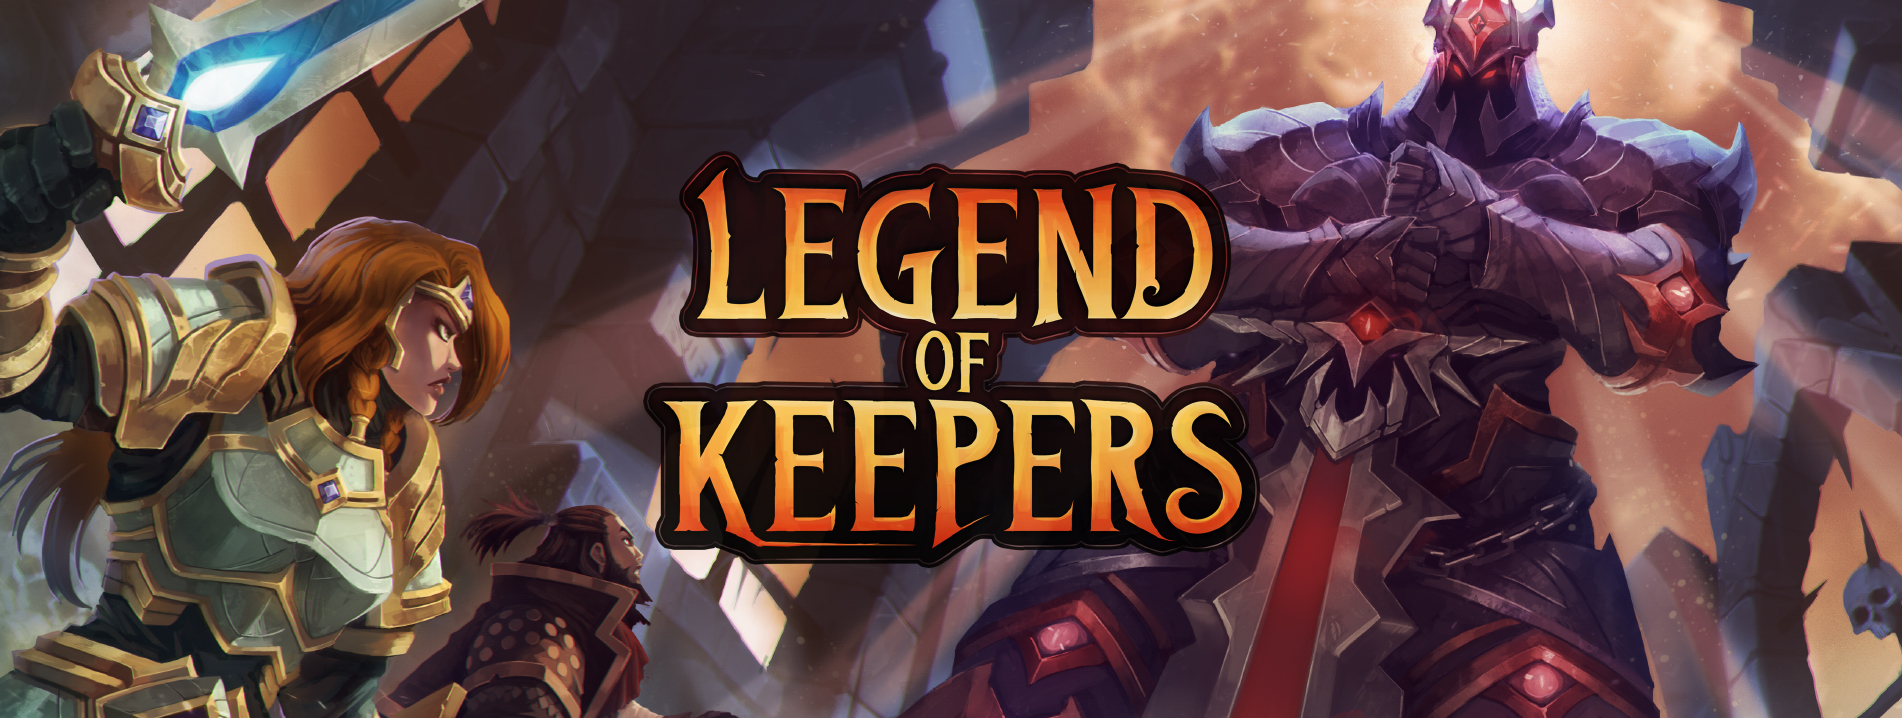 画像集サムネイル一覧 Pc Steam 用ソフト Legend Of Keepers 闇の守護者 の